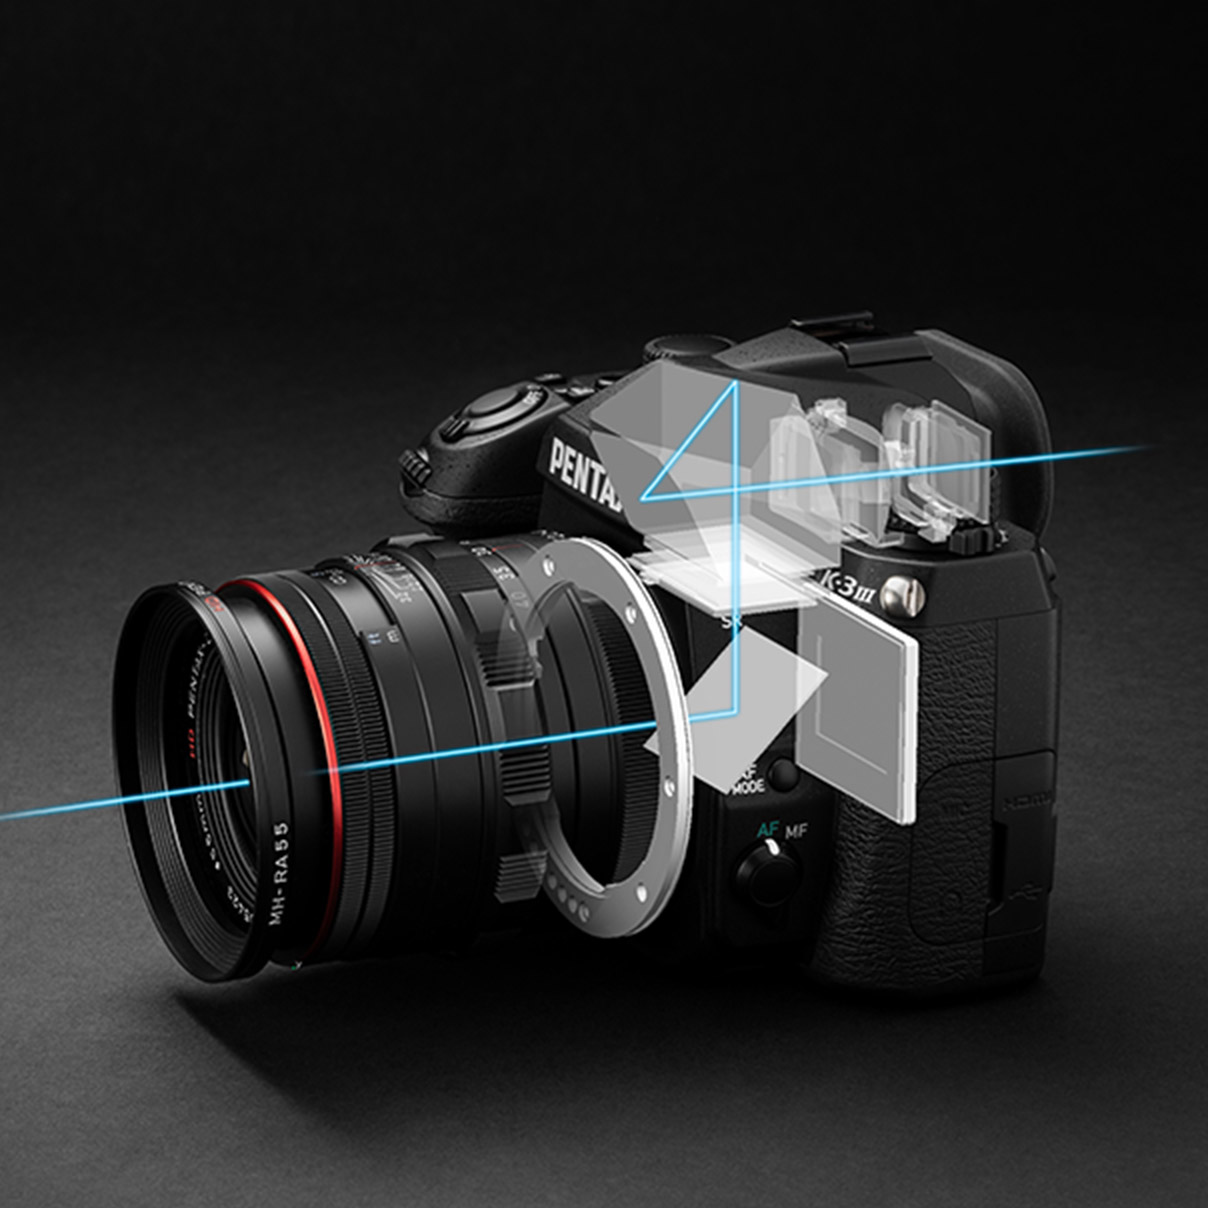 Pentax-K-3-Mark-III-DSLR-camera-2.jpg